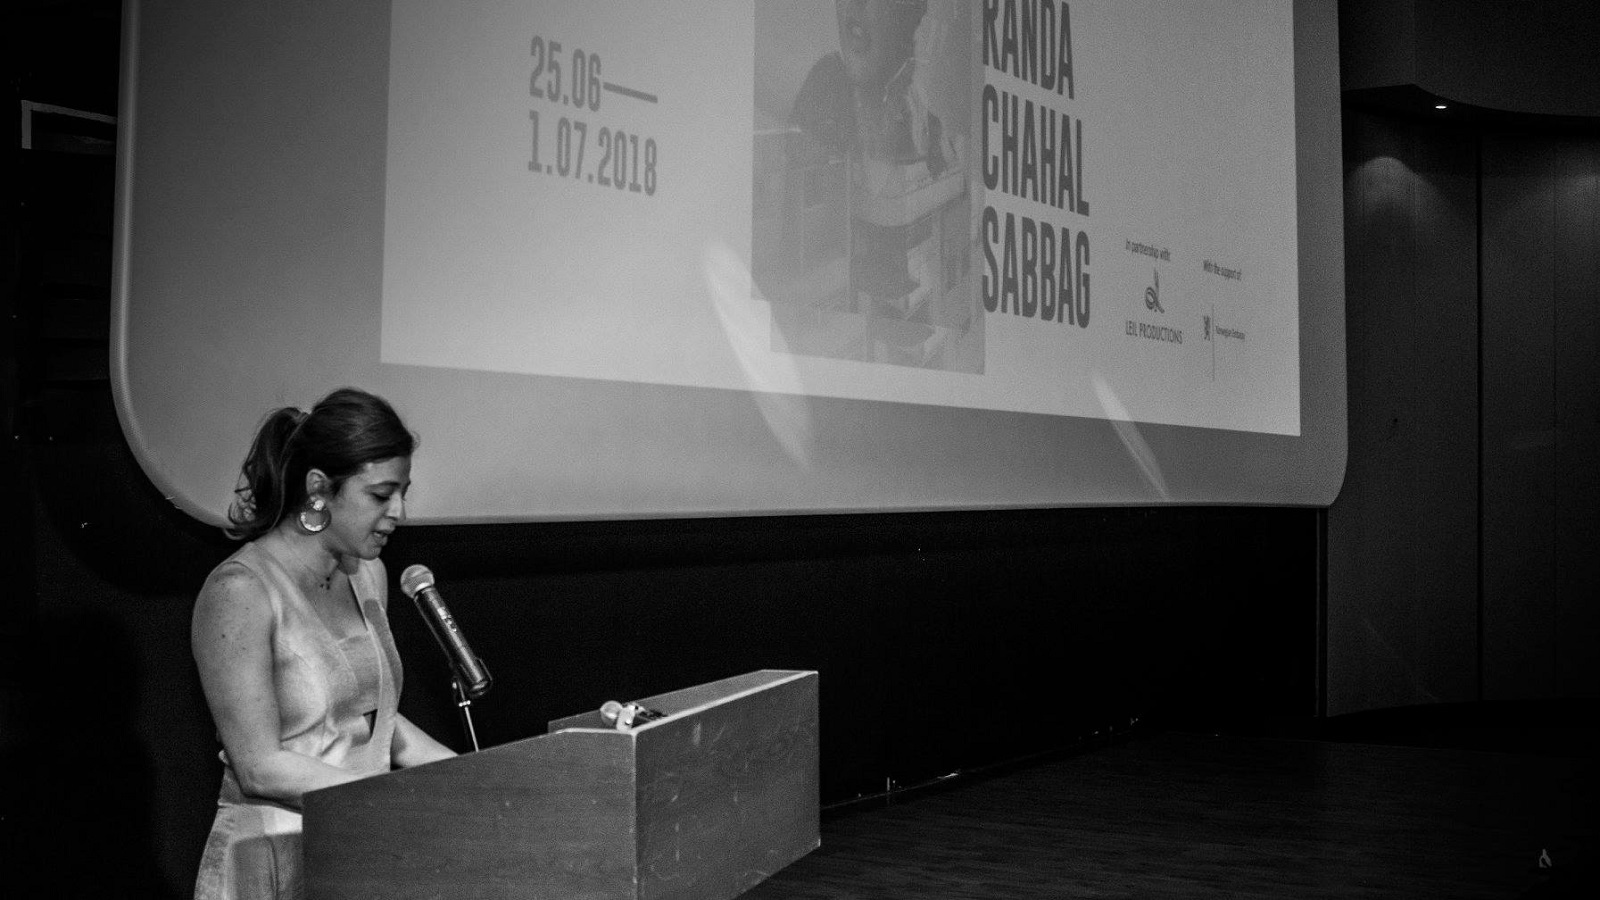 هانيا مروة: مشروع "سينماتيك" ضرورة.. لأن السينما اللبنانية موجودة